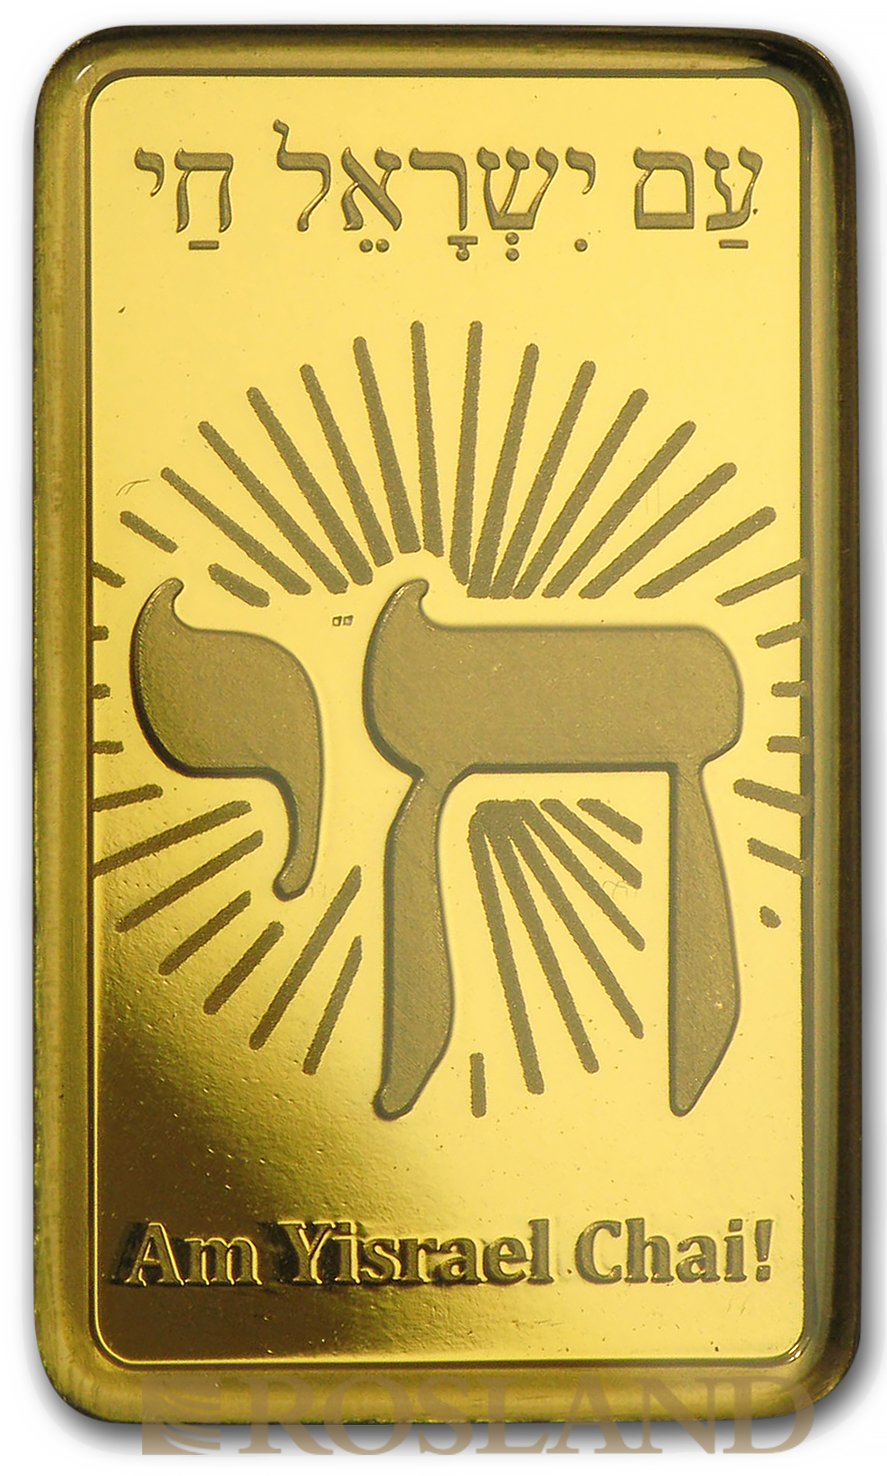 5 Gramm Goldbarren PAMP Religion - Am Yisrael Chai